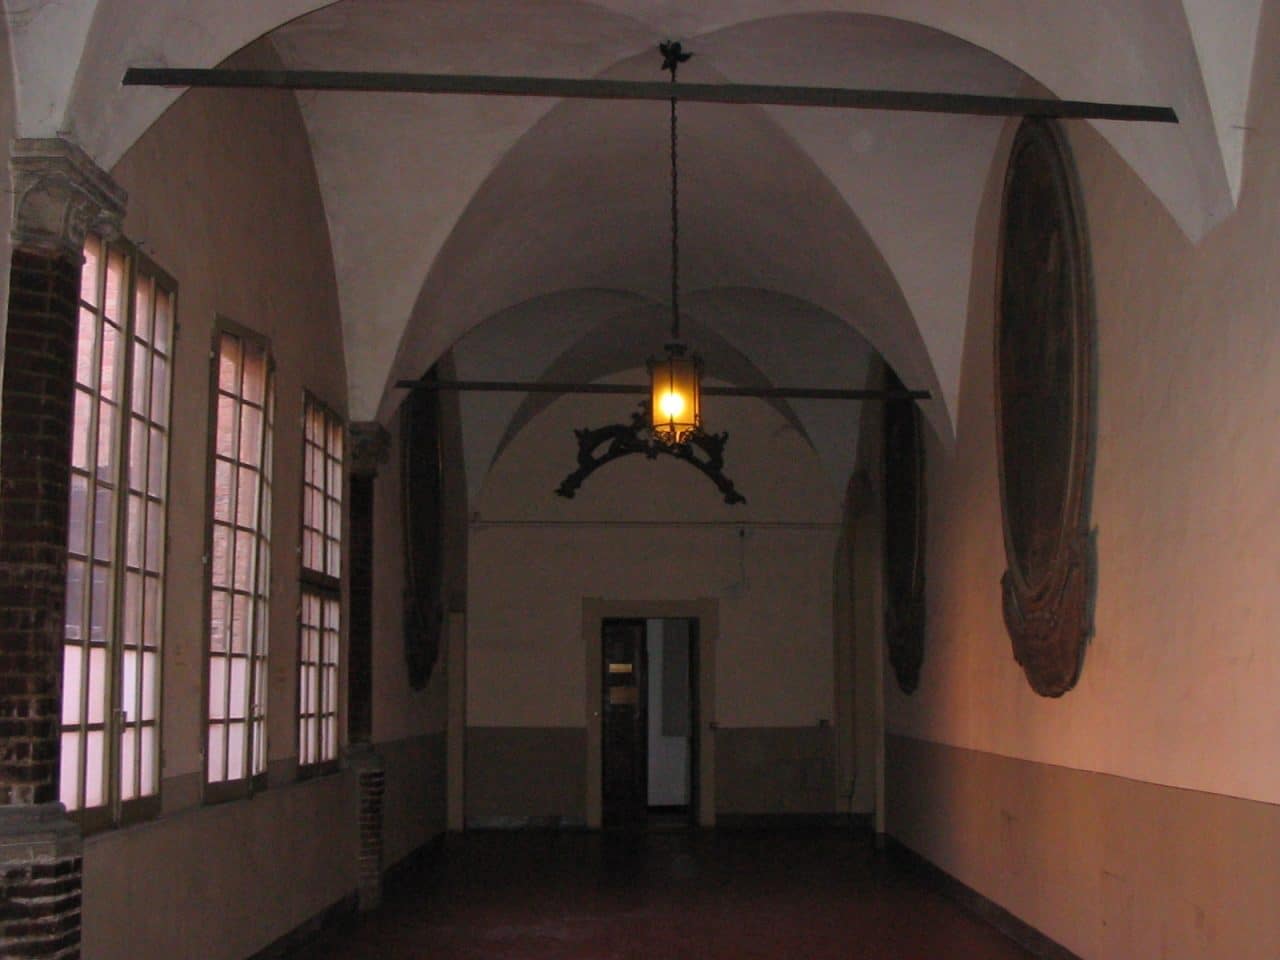  Vestíbulo de Bolonia Cultura Italiana con linterna en el techo